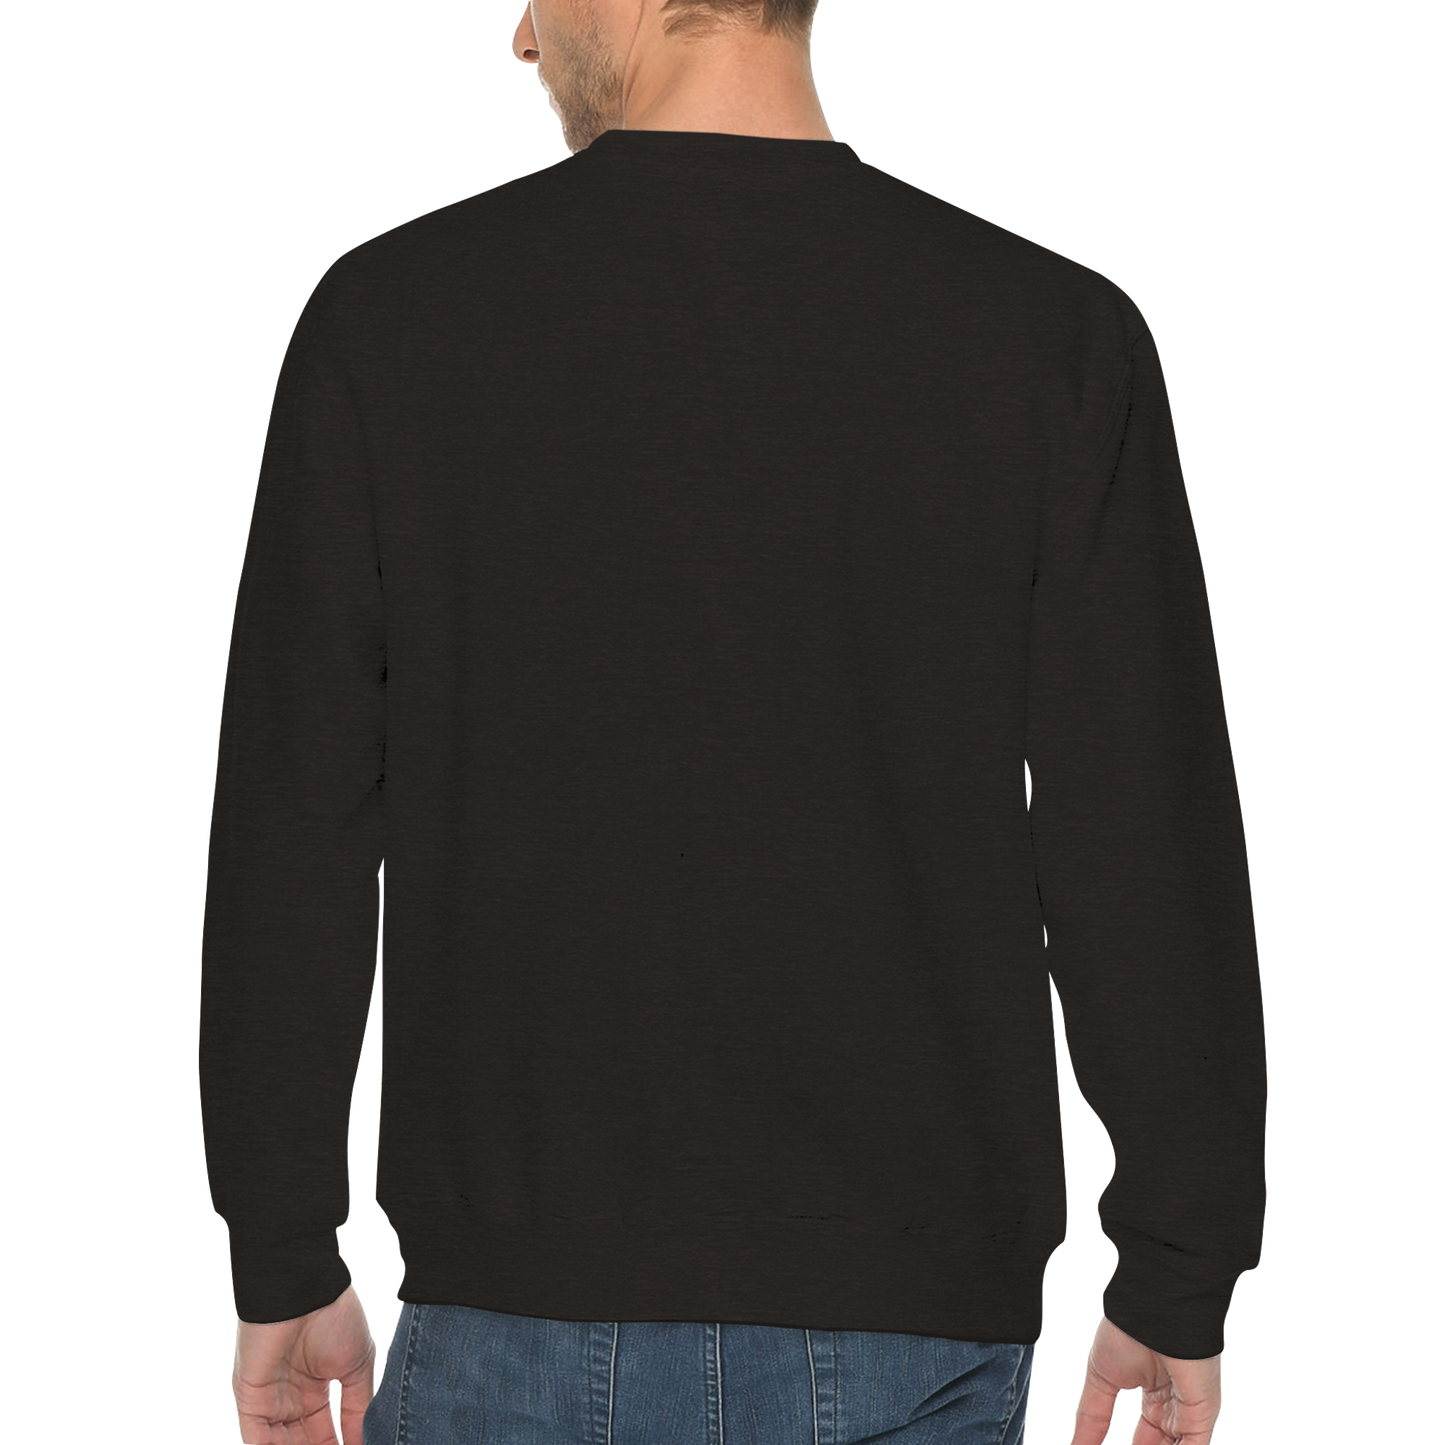 Peter Puck Pose Mens Premium Crewneck Sweatshirt